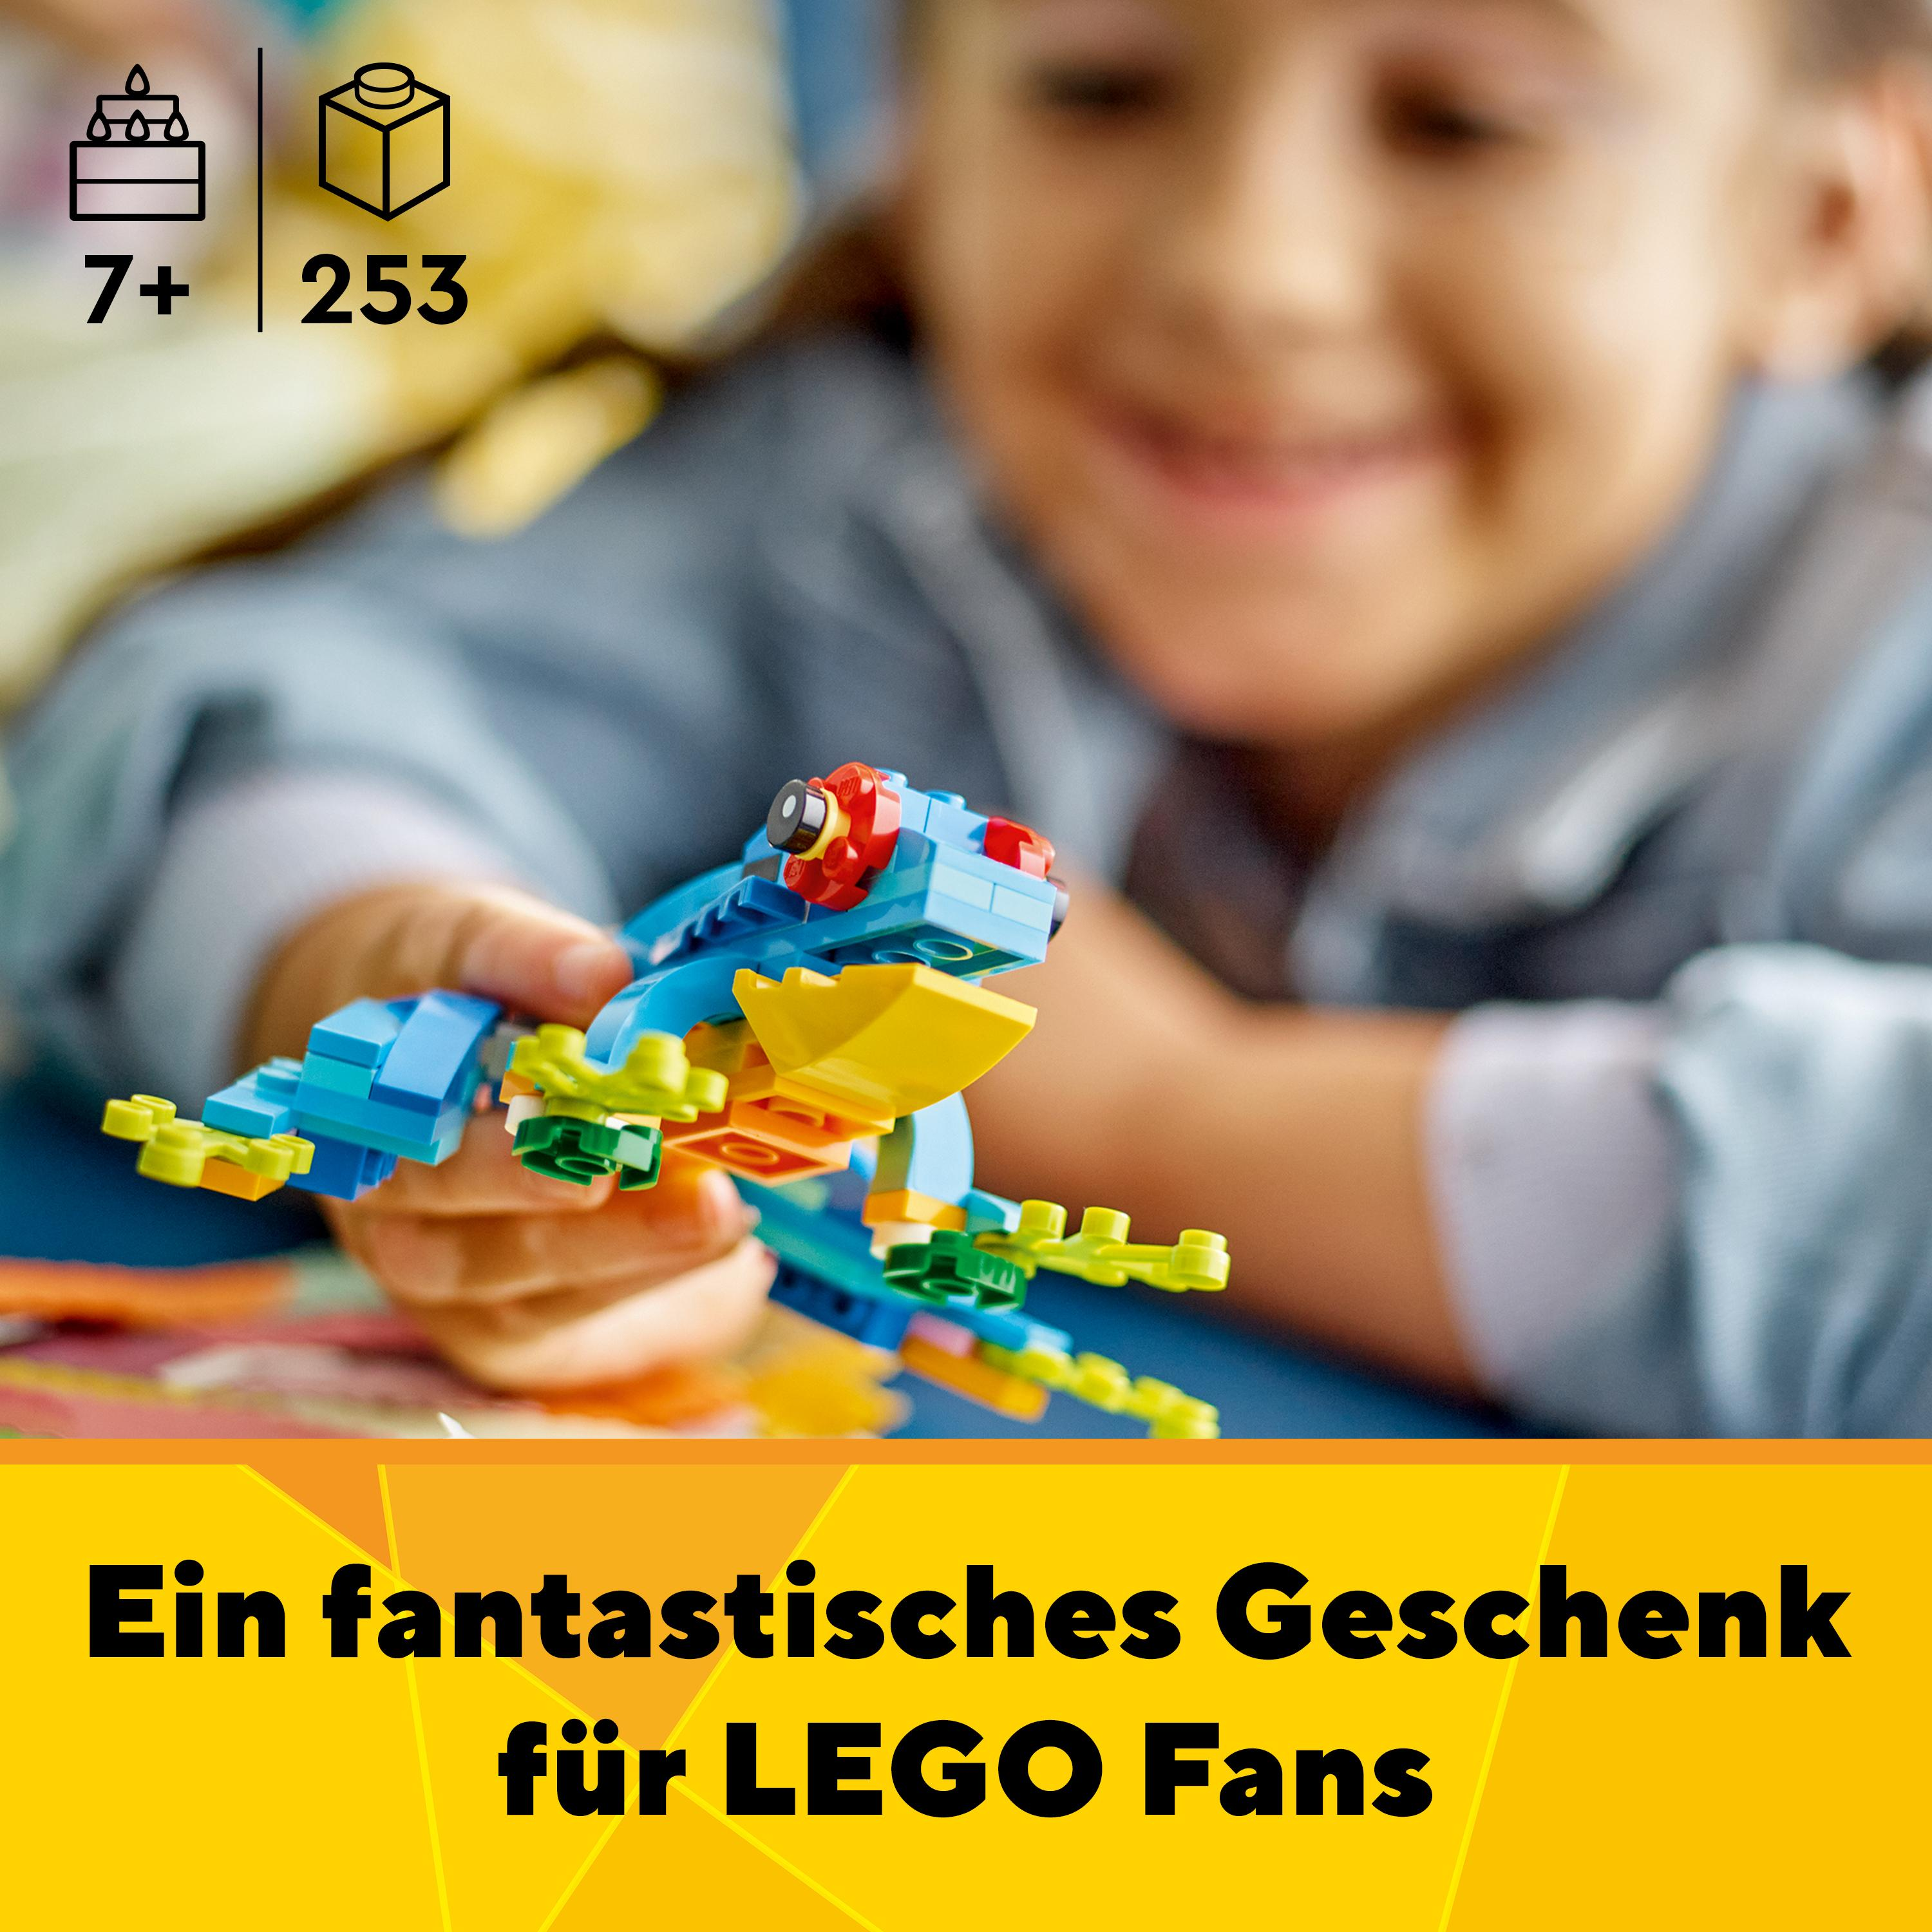 Mehrfarbig Papagei Bausatz, Exotischer LEGO 31136 Creator